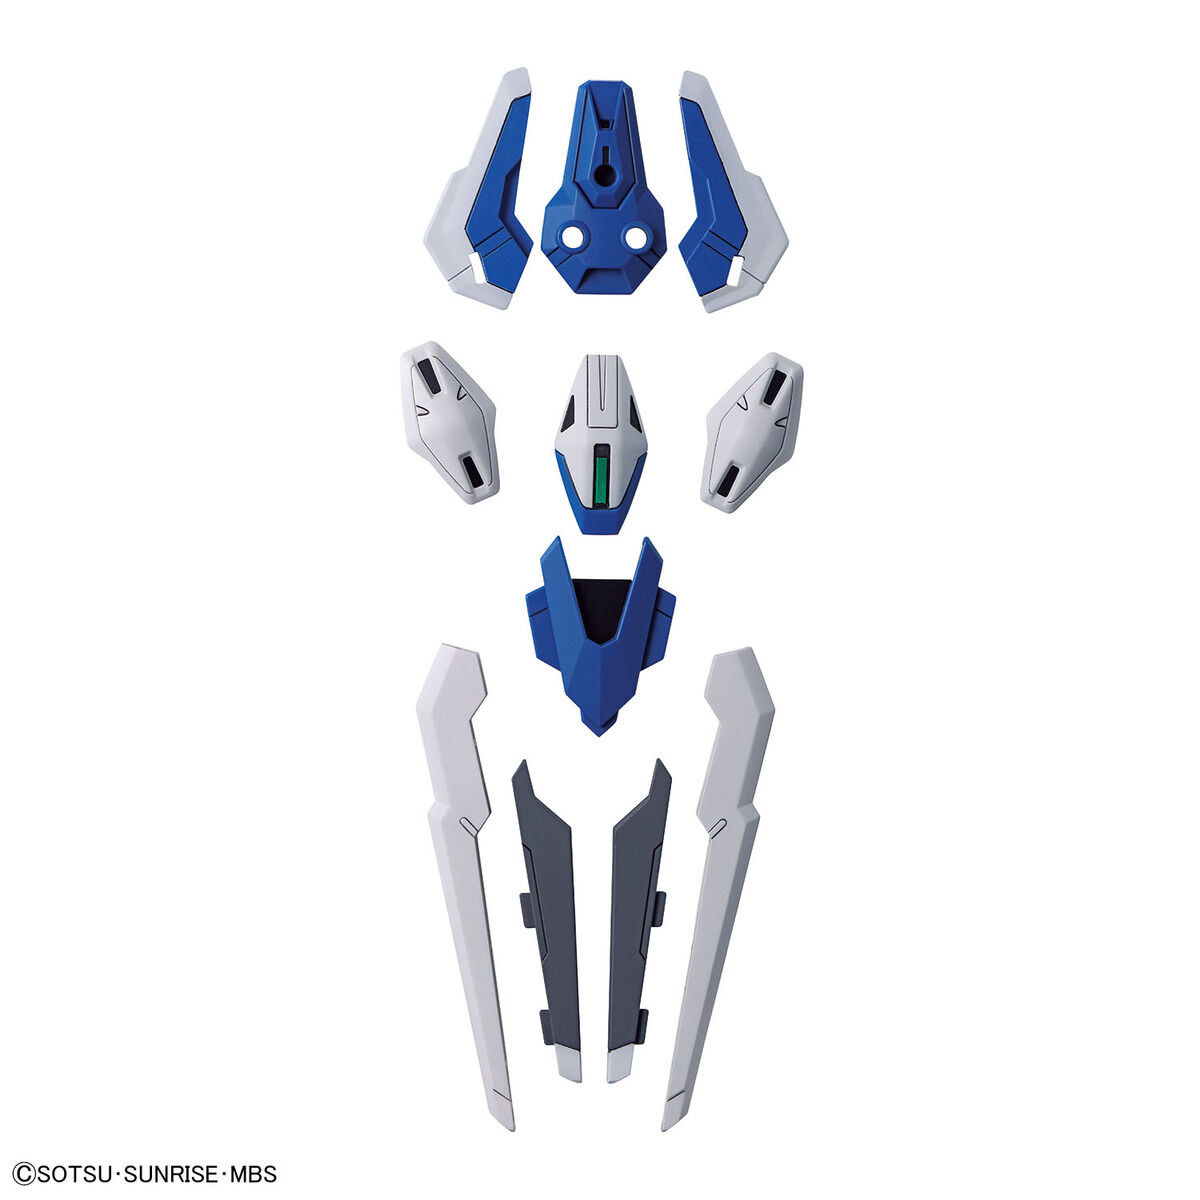 HGWM 1/144 No.19 XVX-016RN Gundam Aerial Rebuild